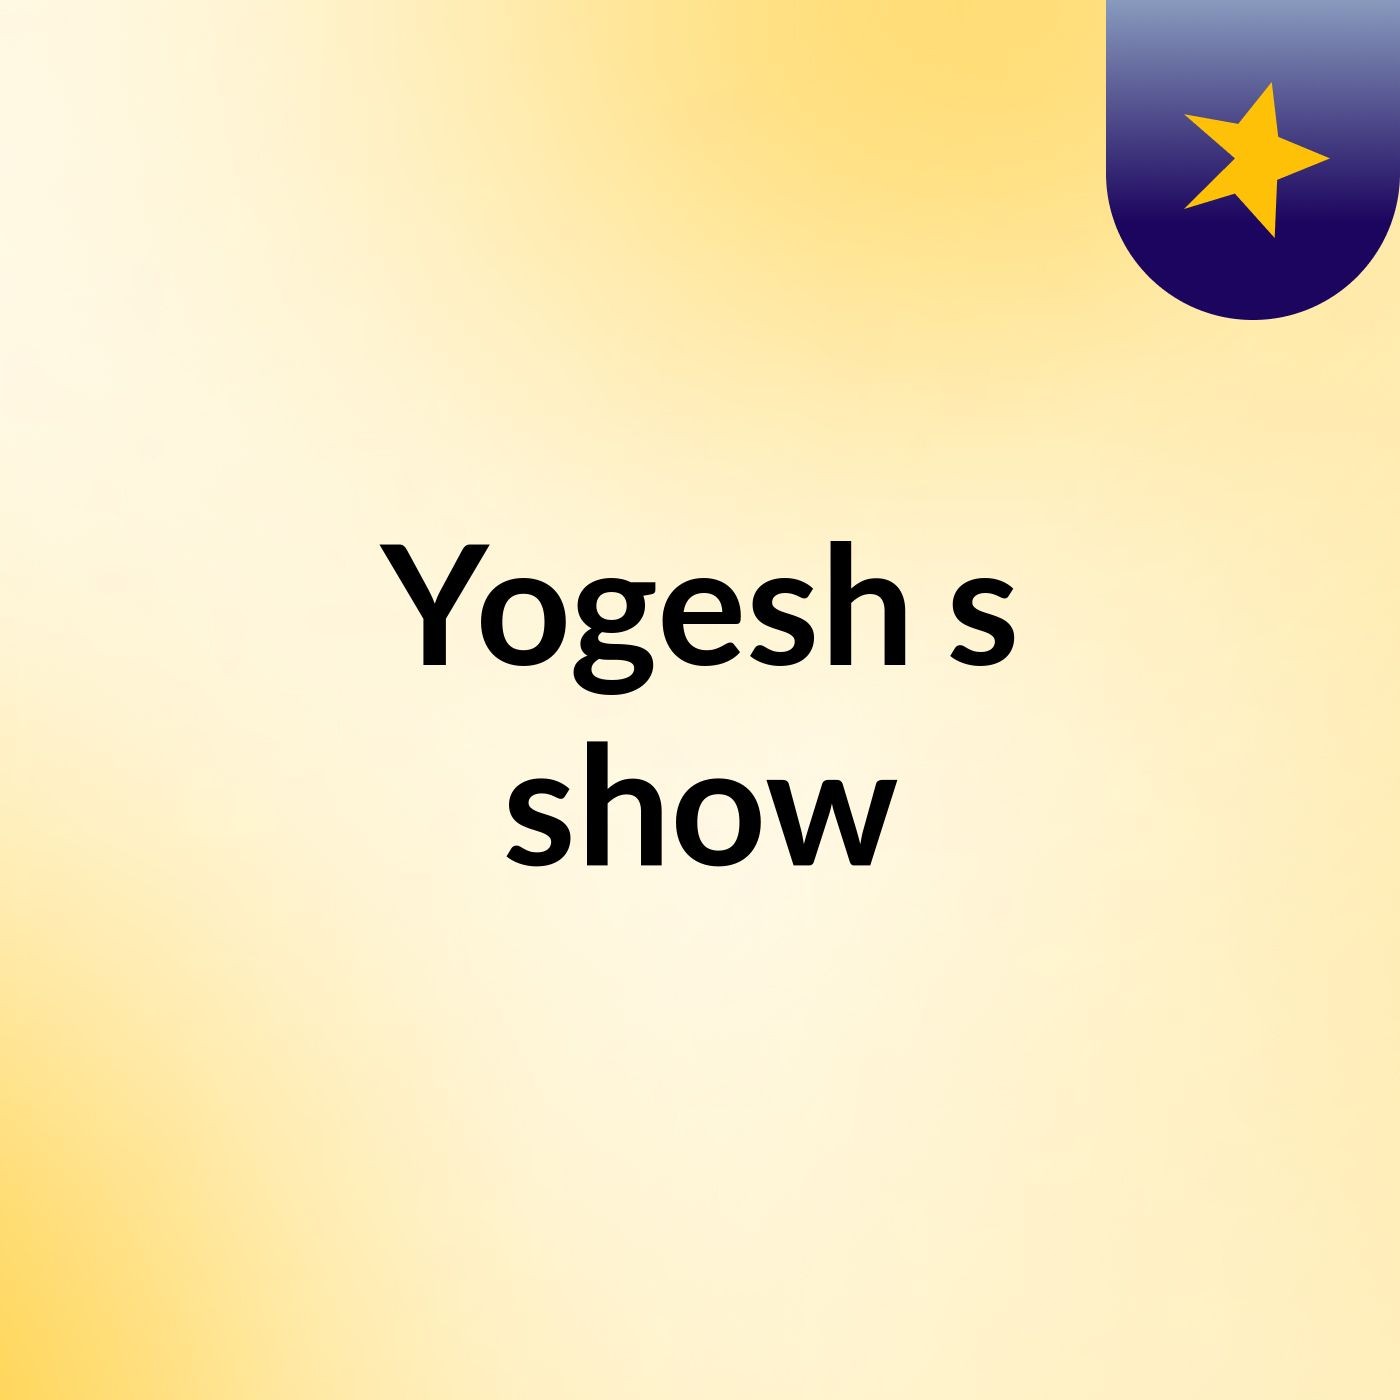 Yogesh's show